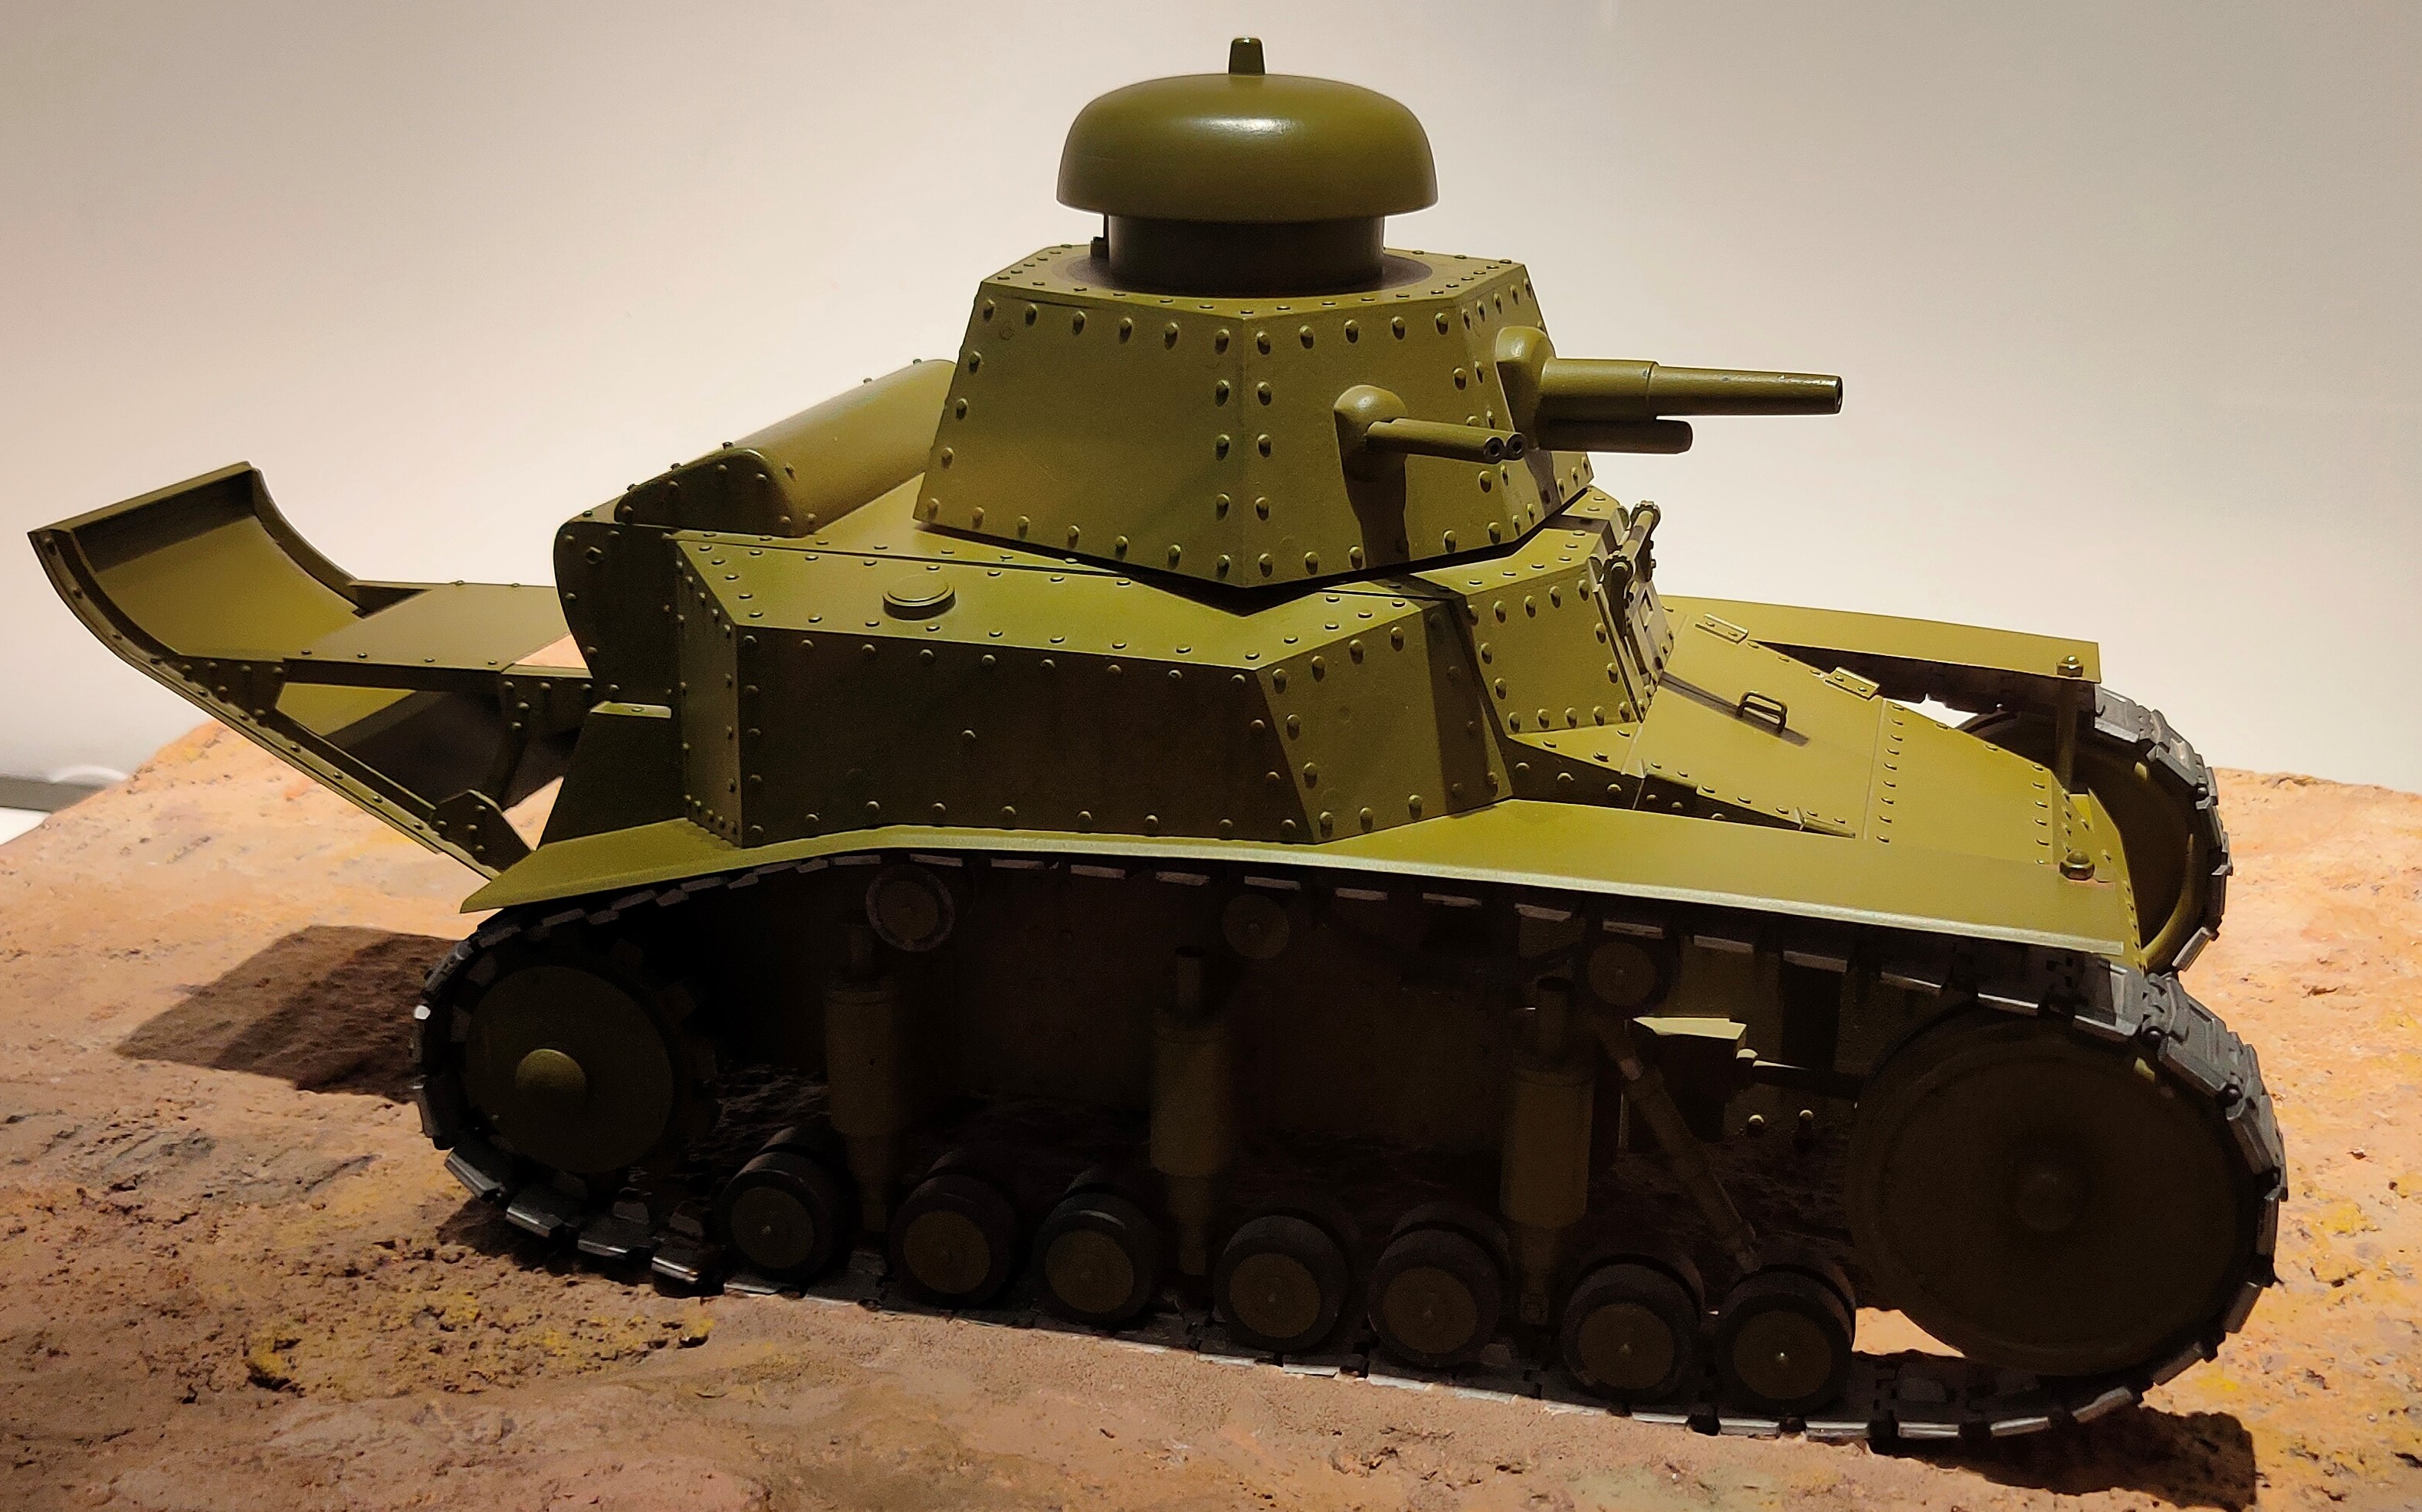 Макет первого советского серийного танка Т-18 (МС-1) завода "Большевик"